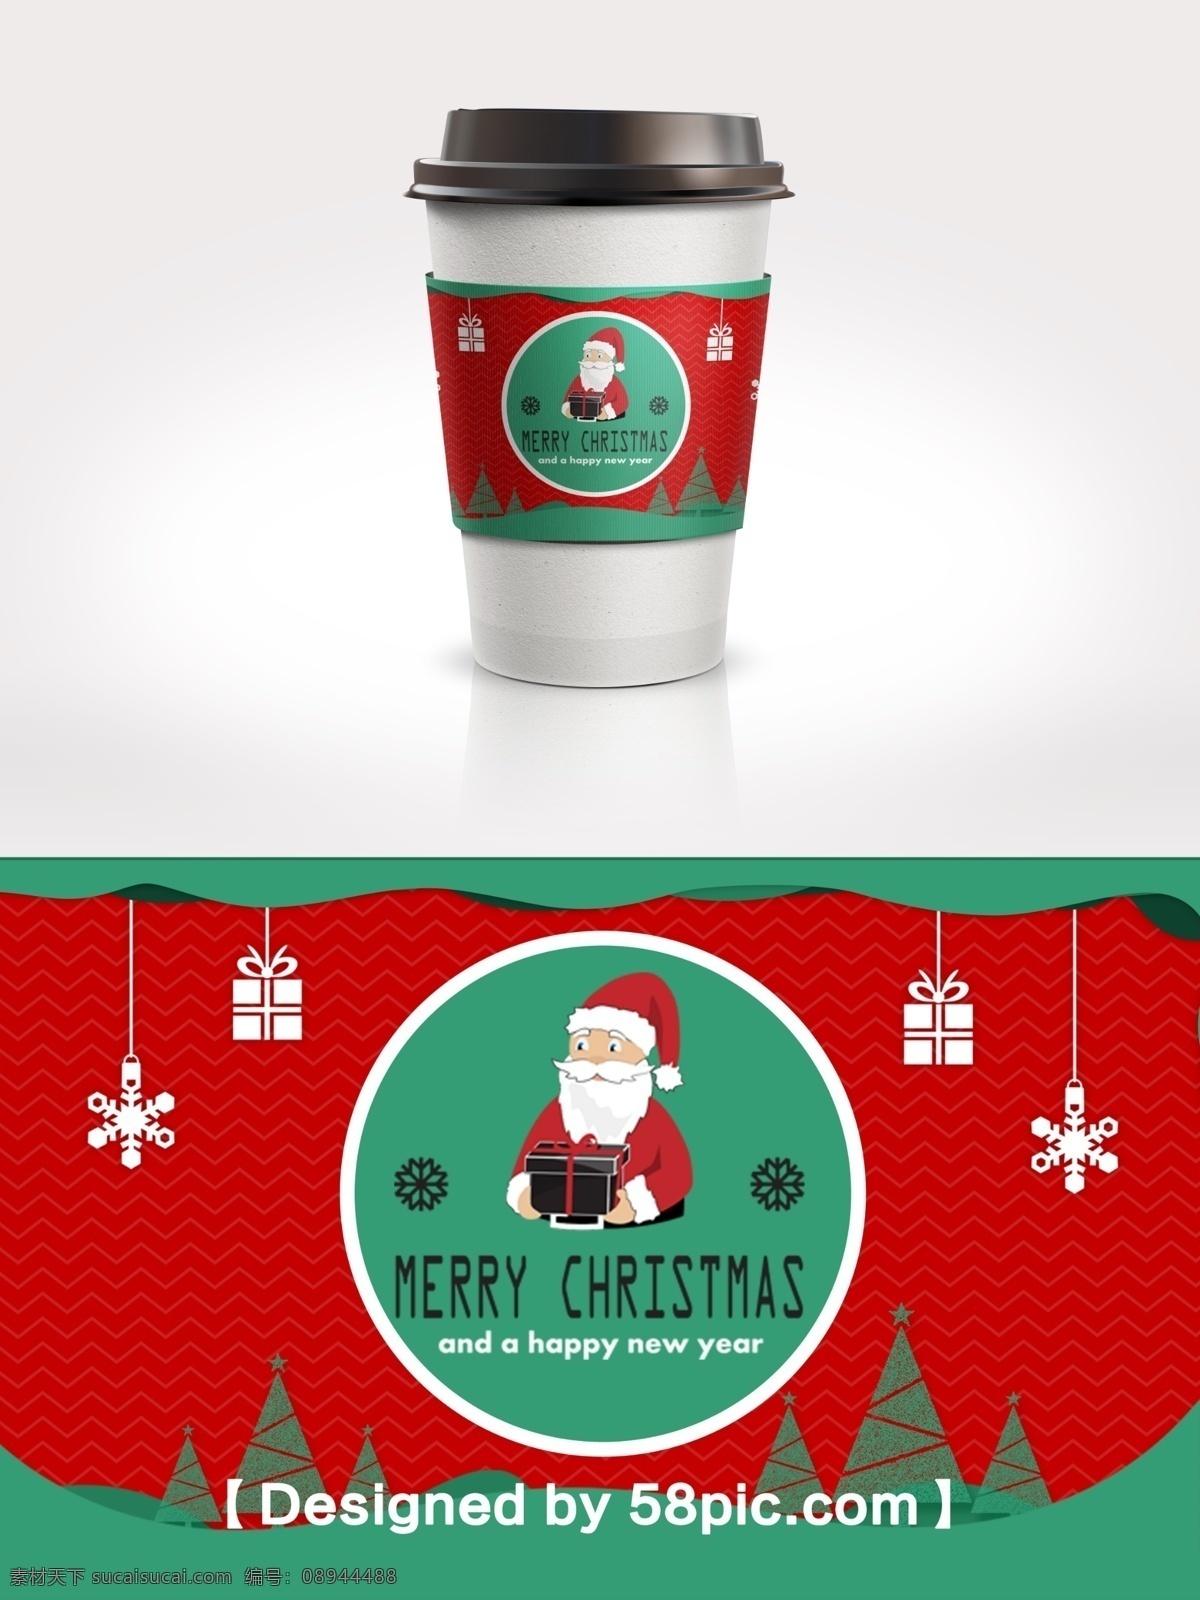 红 绿色 圣诞节 圣诞老人 杯 套 红绿色 psd素材 圣诞节素材 杯套设计 广告设计模版 圣诞树素材 简约大气 礼物素材